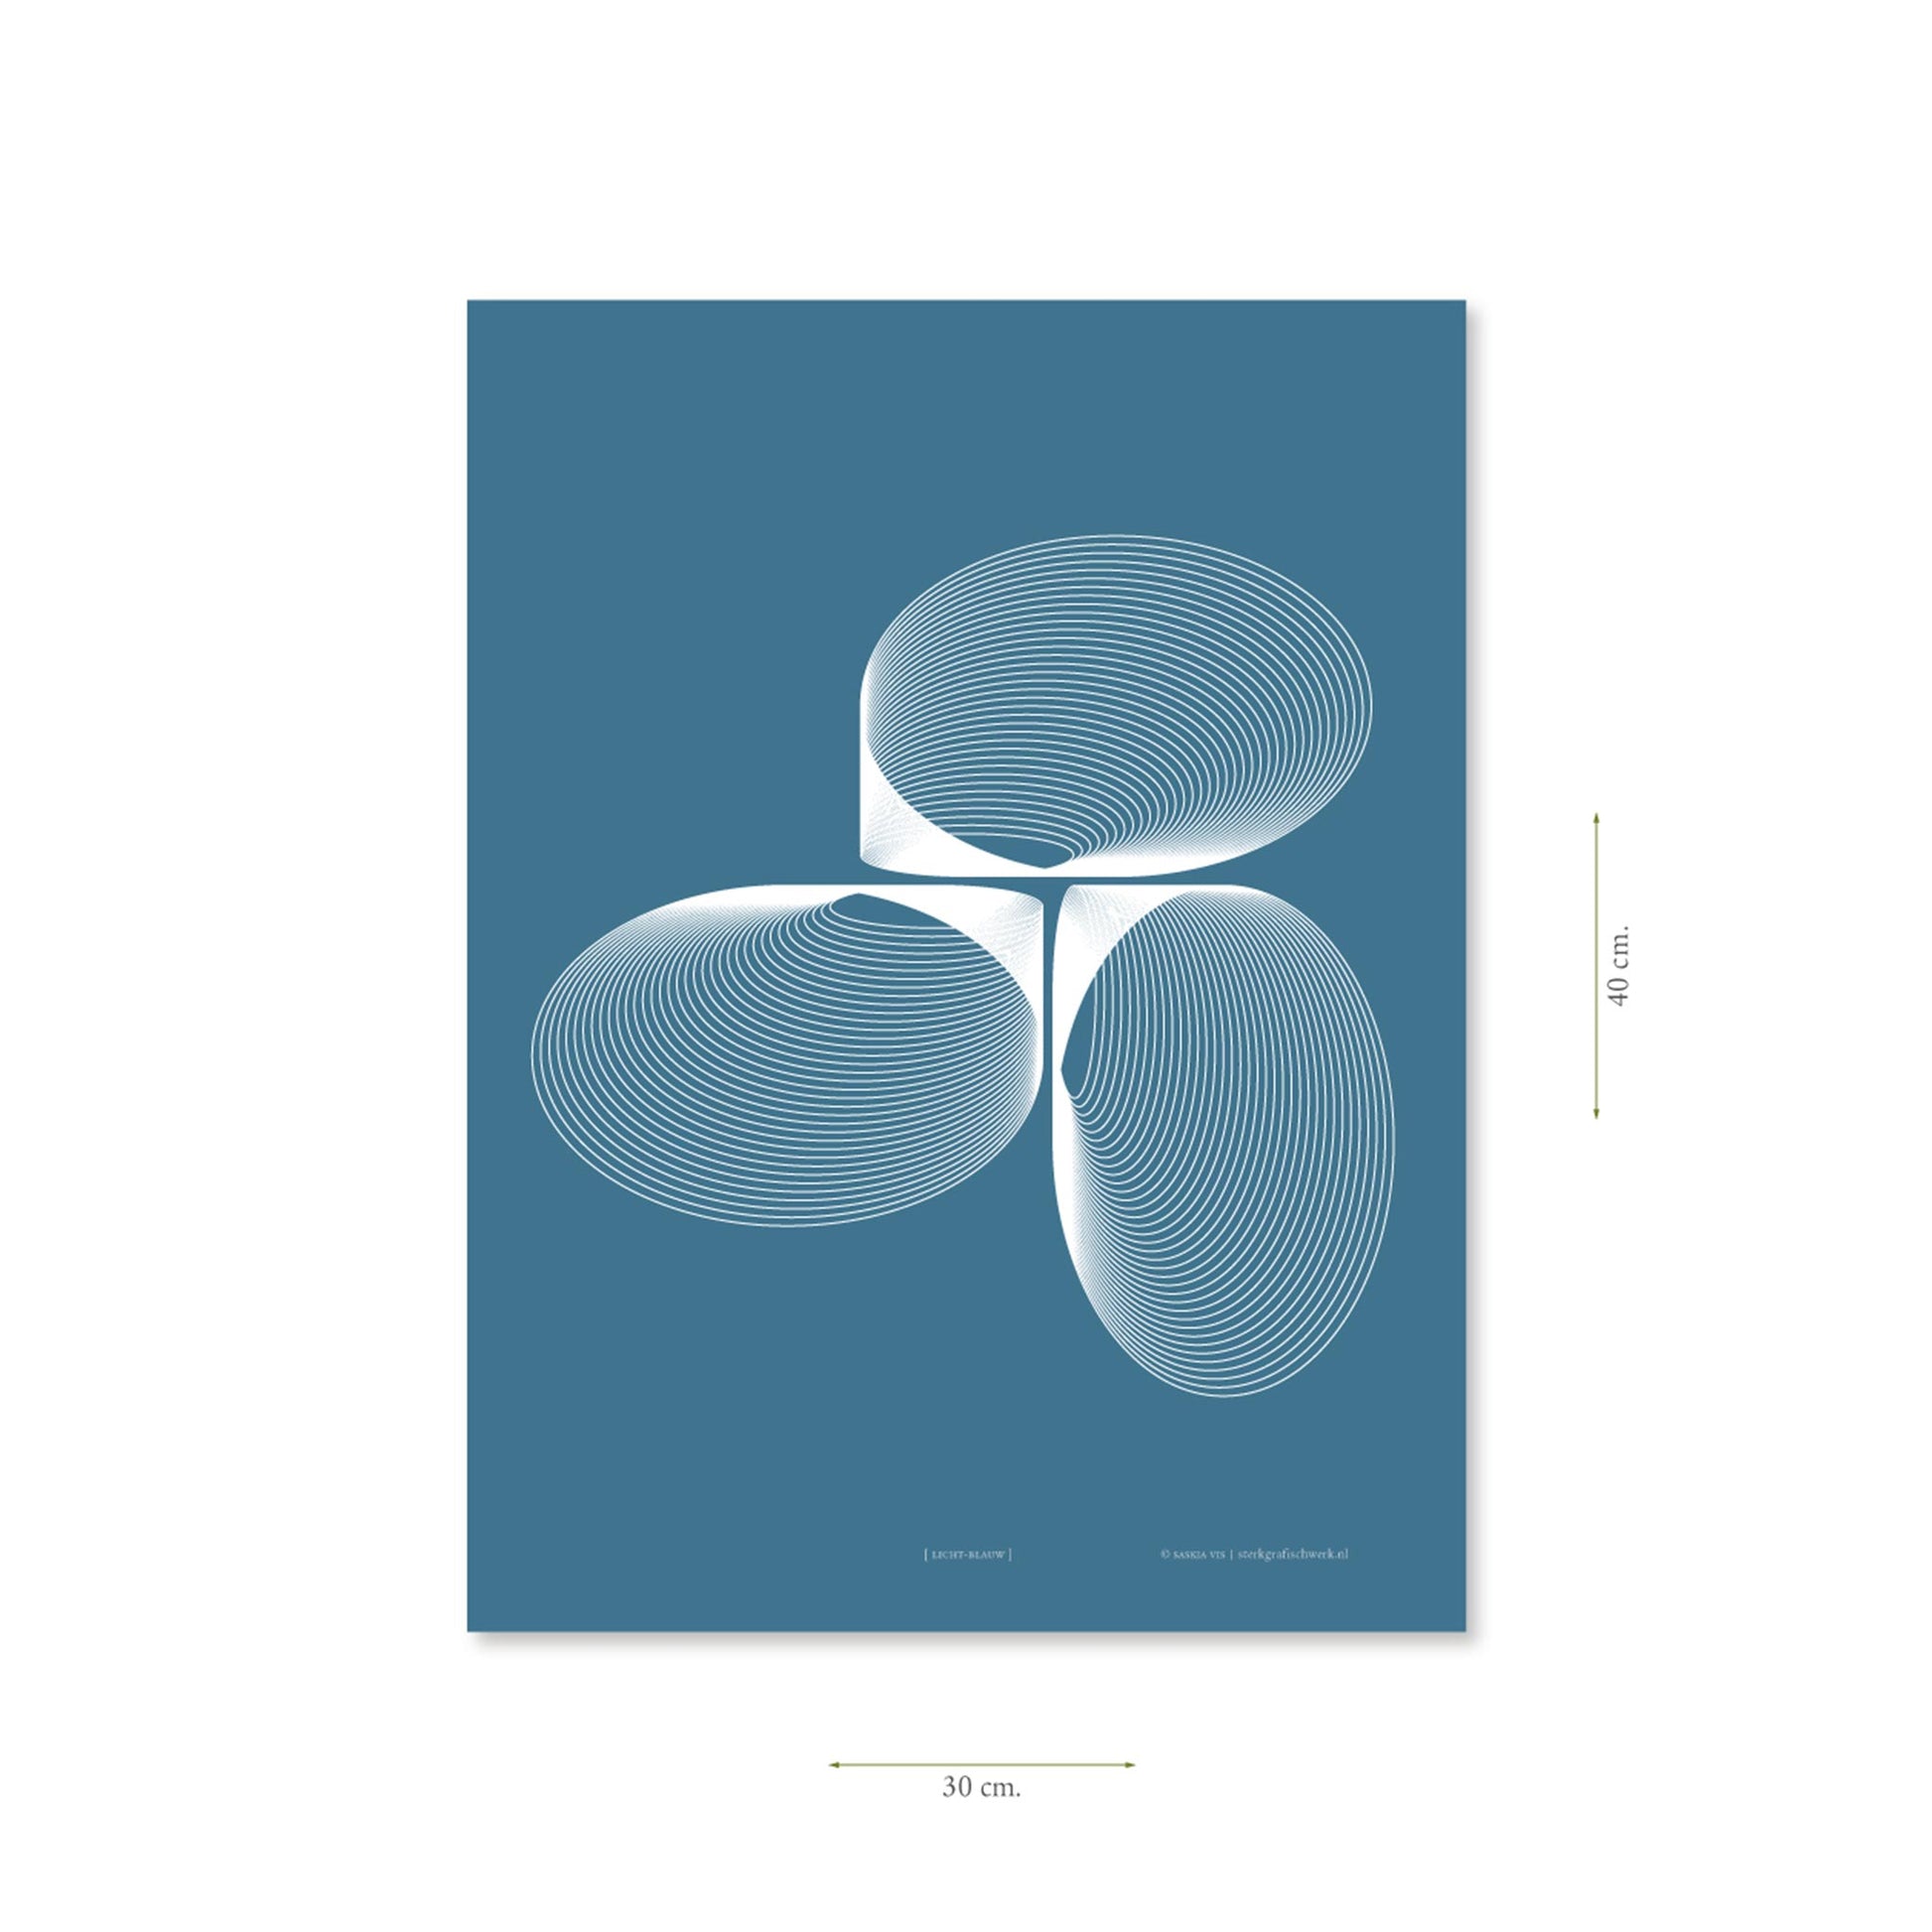 Productafbeelding poster "licht-blauw" met aanduiding van het formaat erop weergegeven 30 x 40 cm